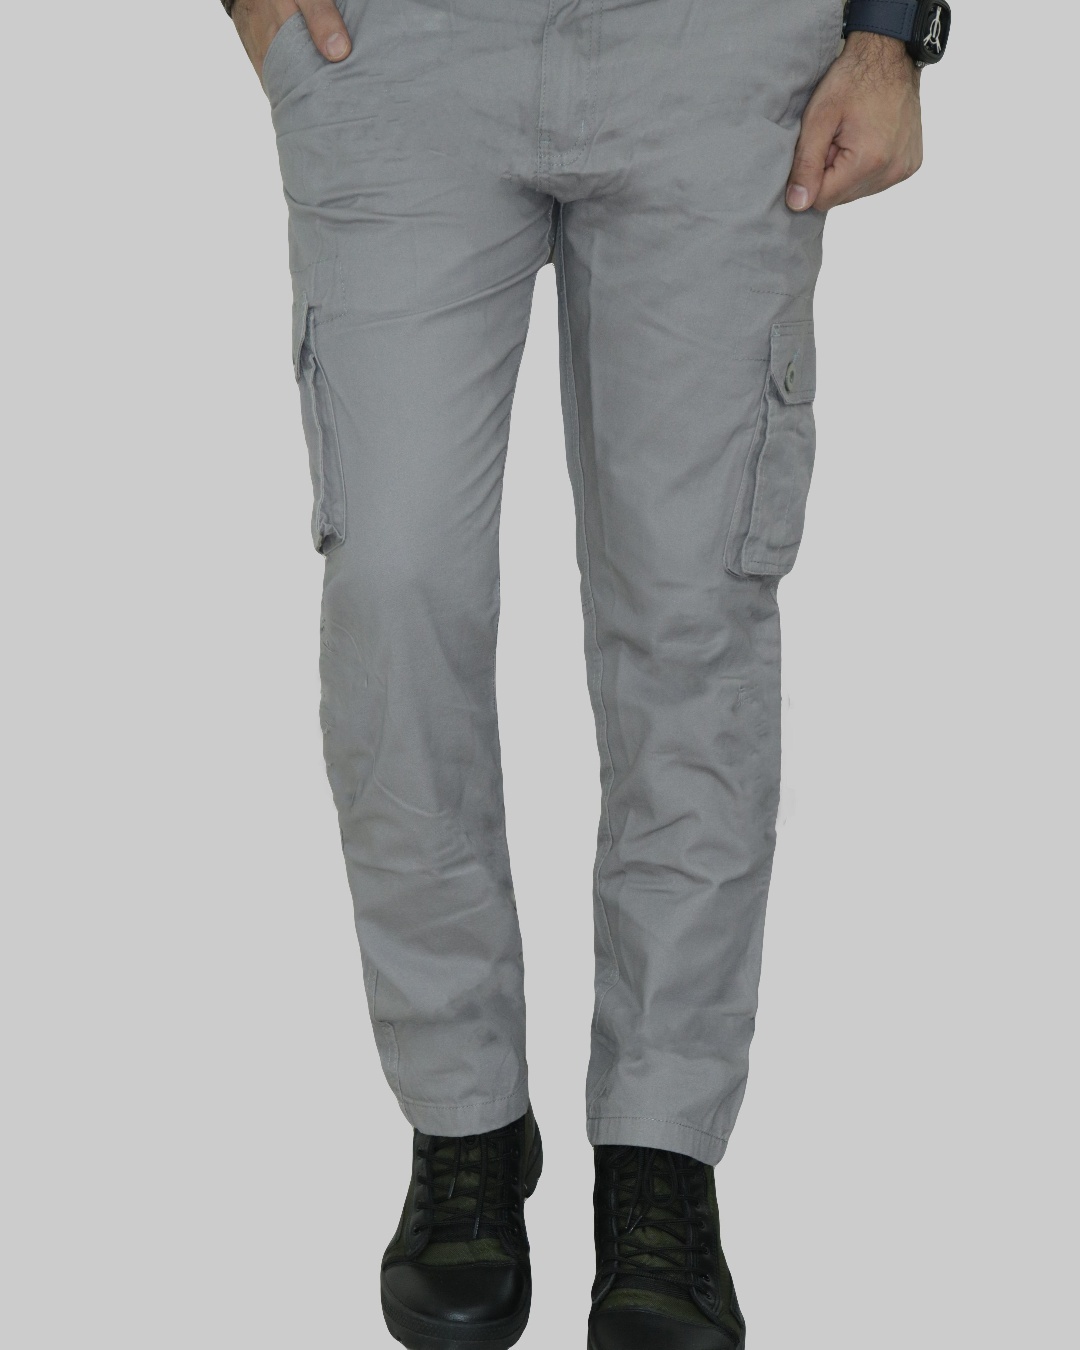 Buy Men's Grey Cargo Pants Online at Bewakoof